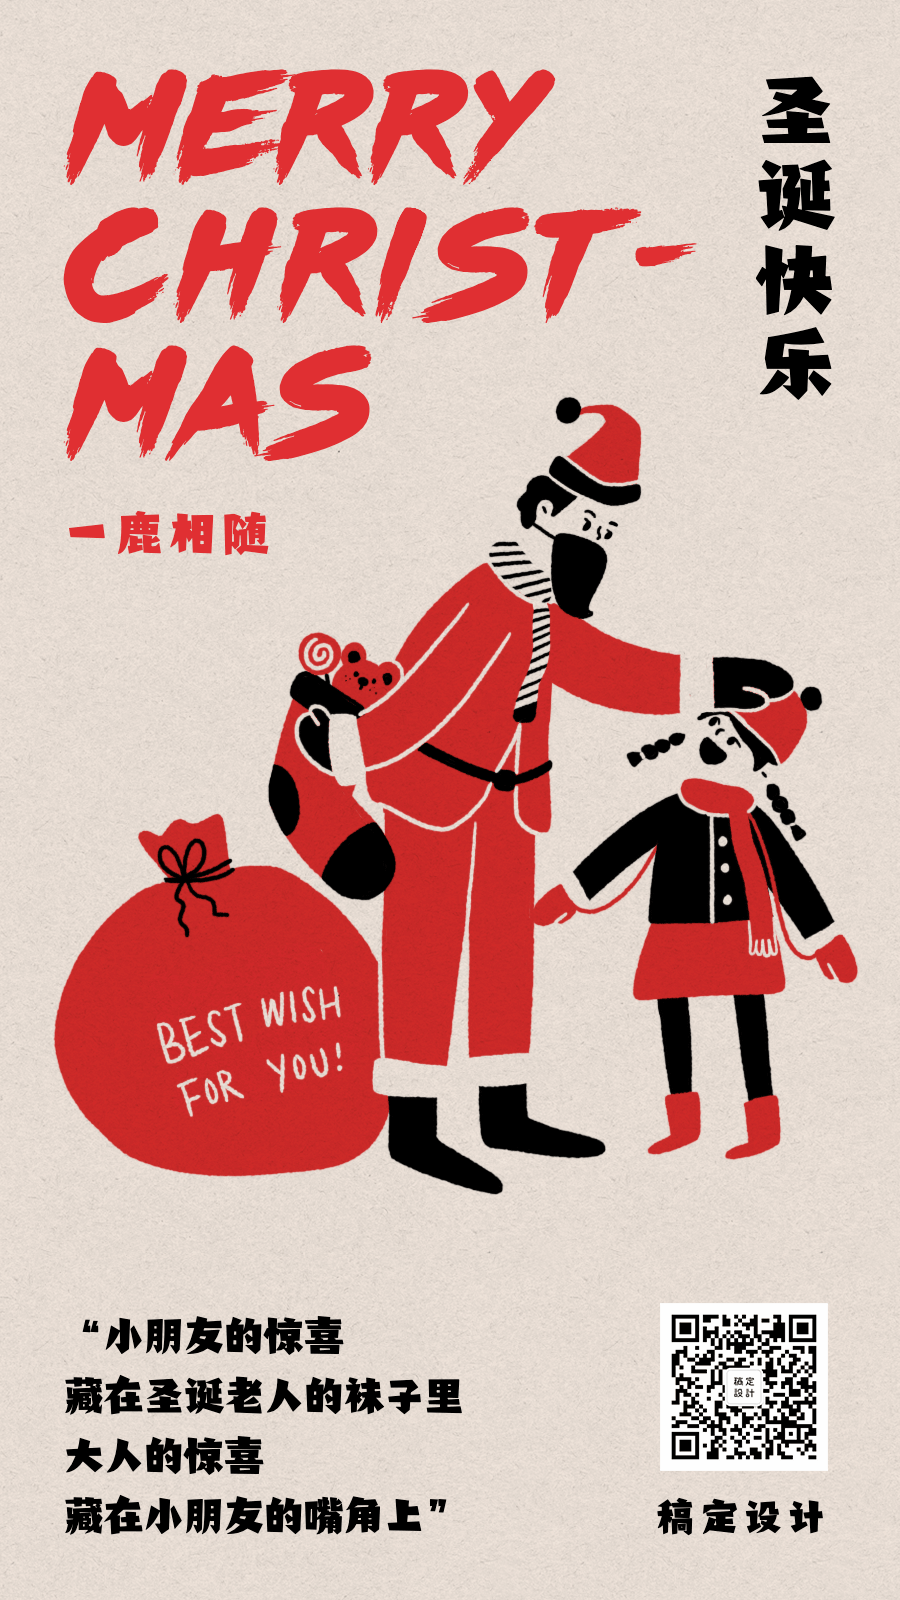 圣诞节节日祝福可爱卡通手绘动态海报